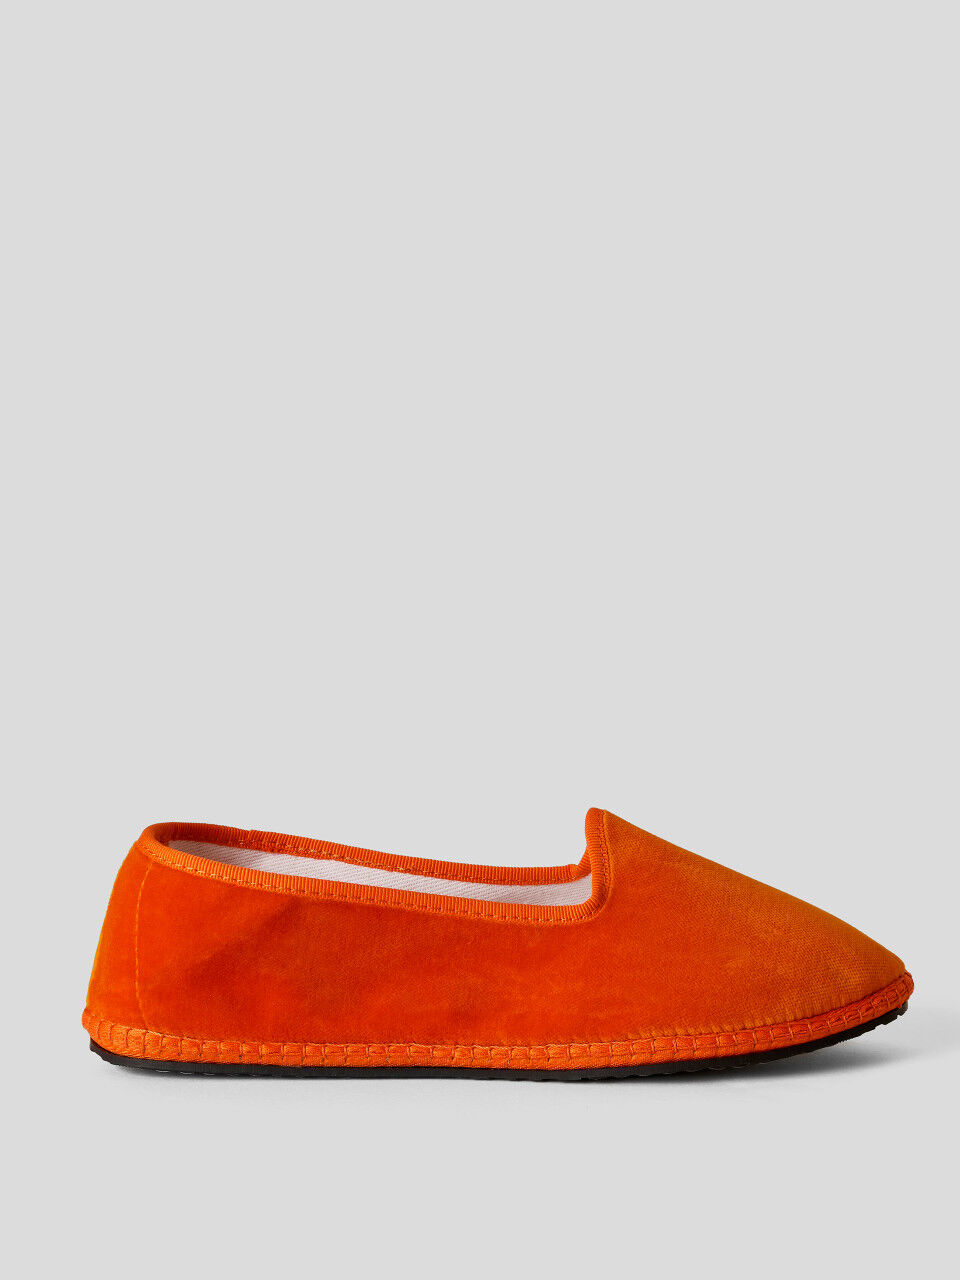 Παπούτσια Friulane πορτοκαλί από βελούδο